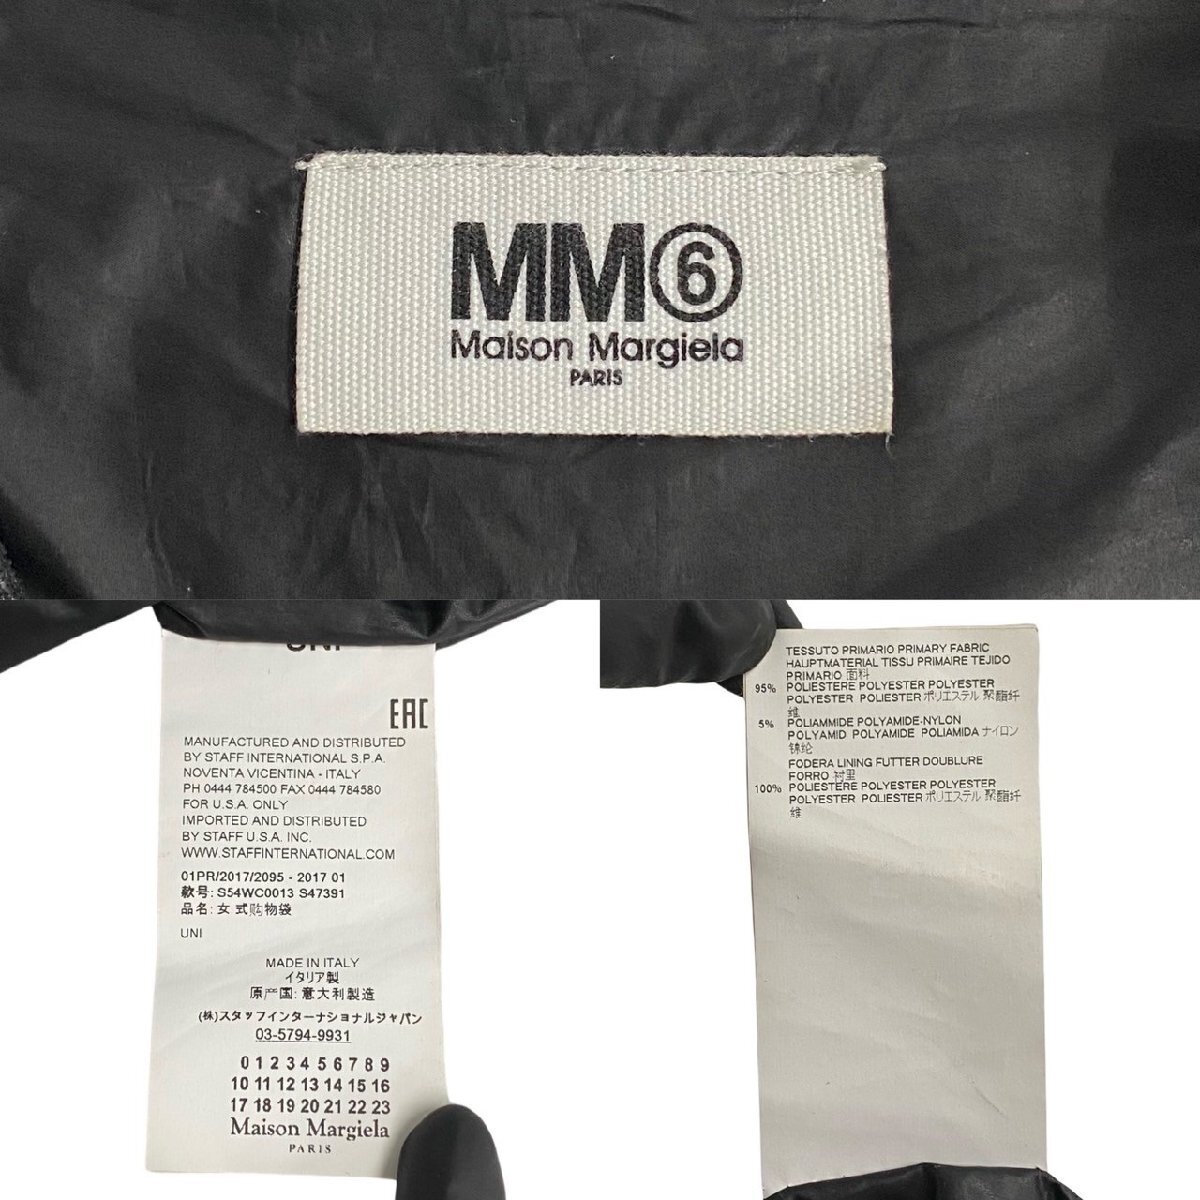  превосходный товар Maison Margiela mezzo n Margiela MM6 M M Schic s эко-сумка полиэстер большая сумка ручная сумочка черный 21321